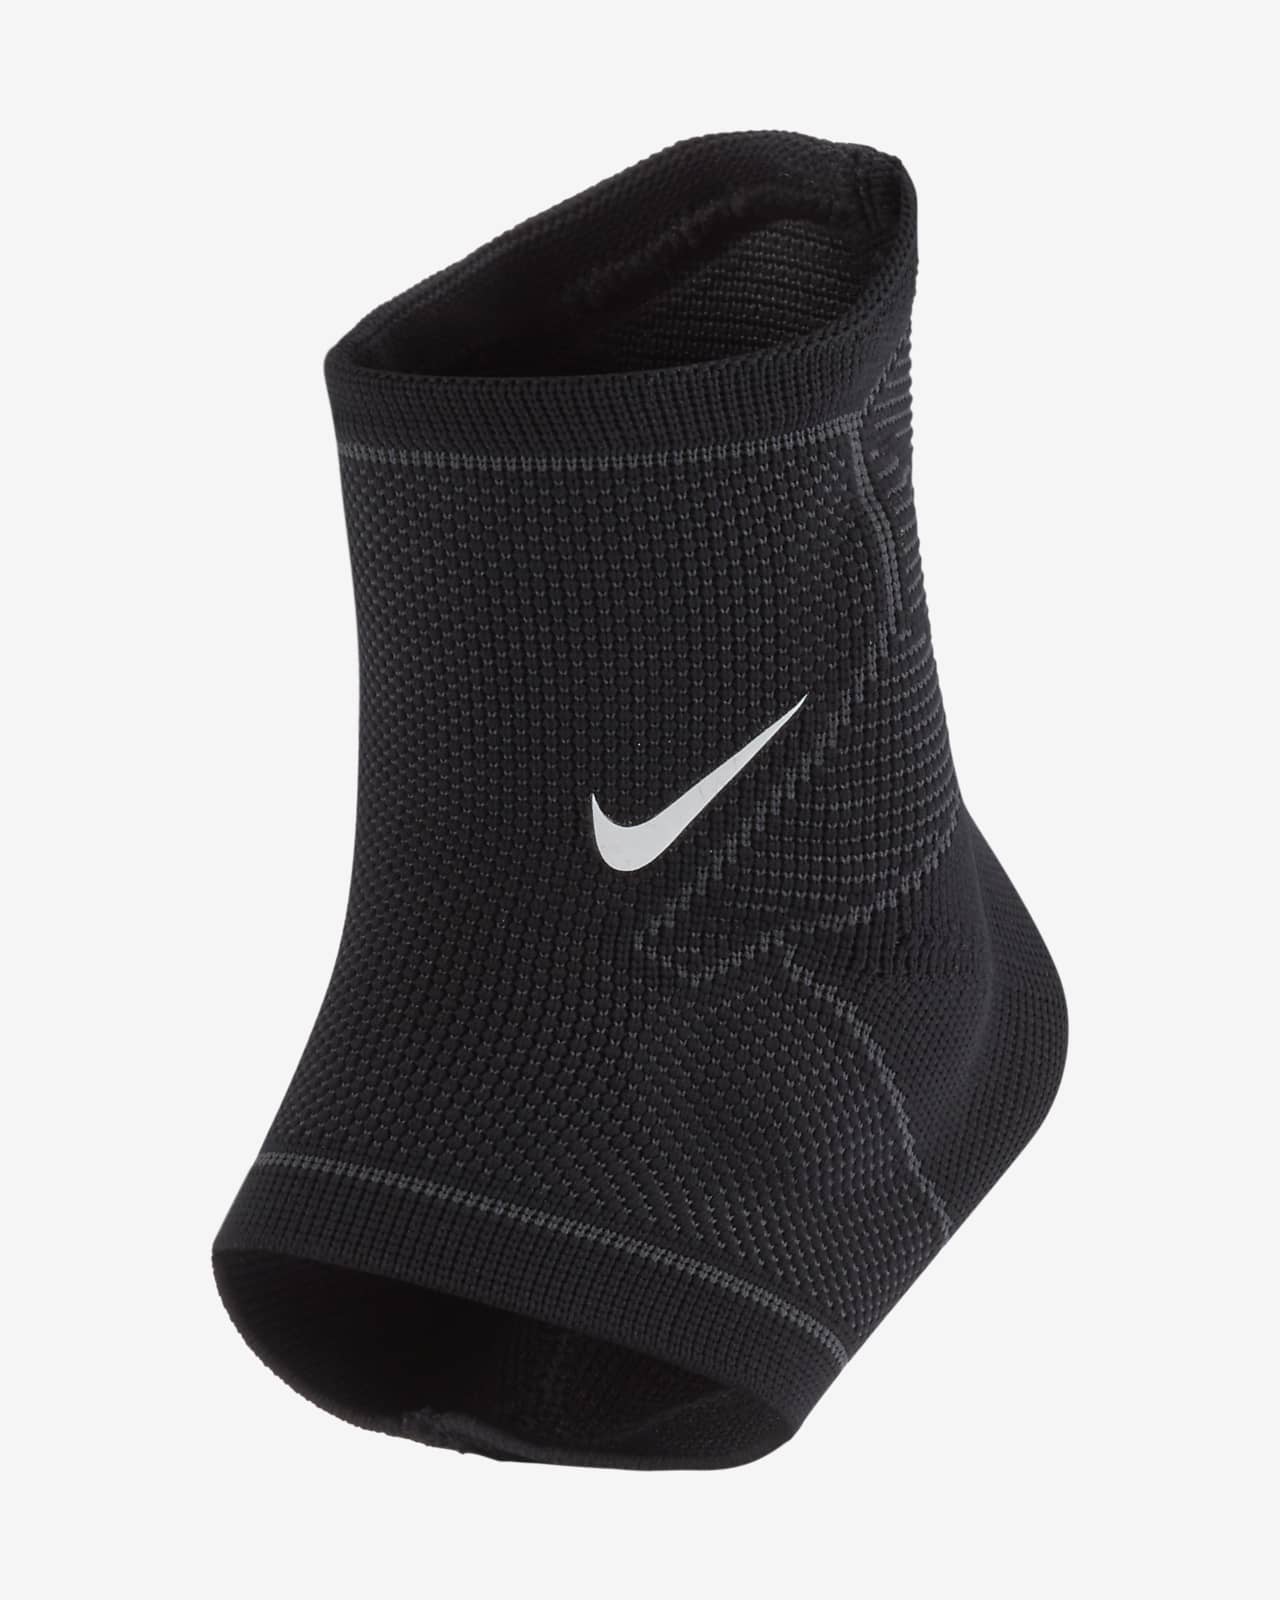 nike compression socks ankle